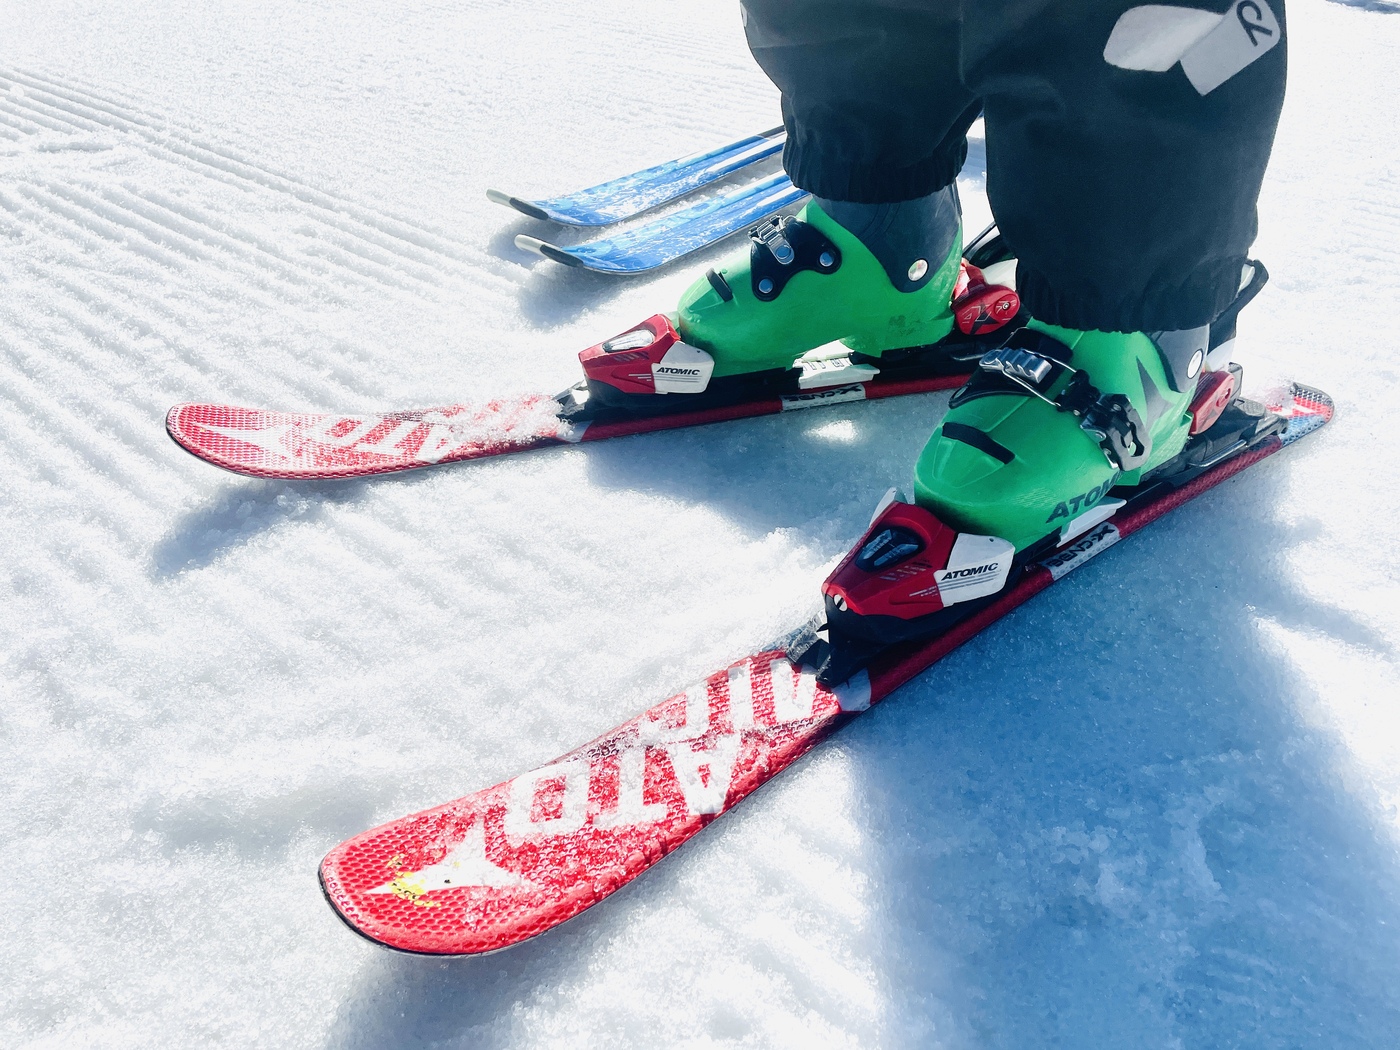 tipps skifahren kinder 6 - Skiausrüstung für Kinder ausleihen oder kaufen?